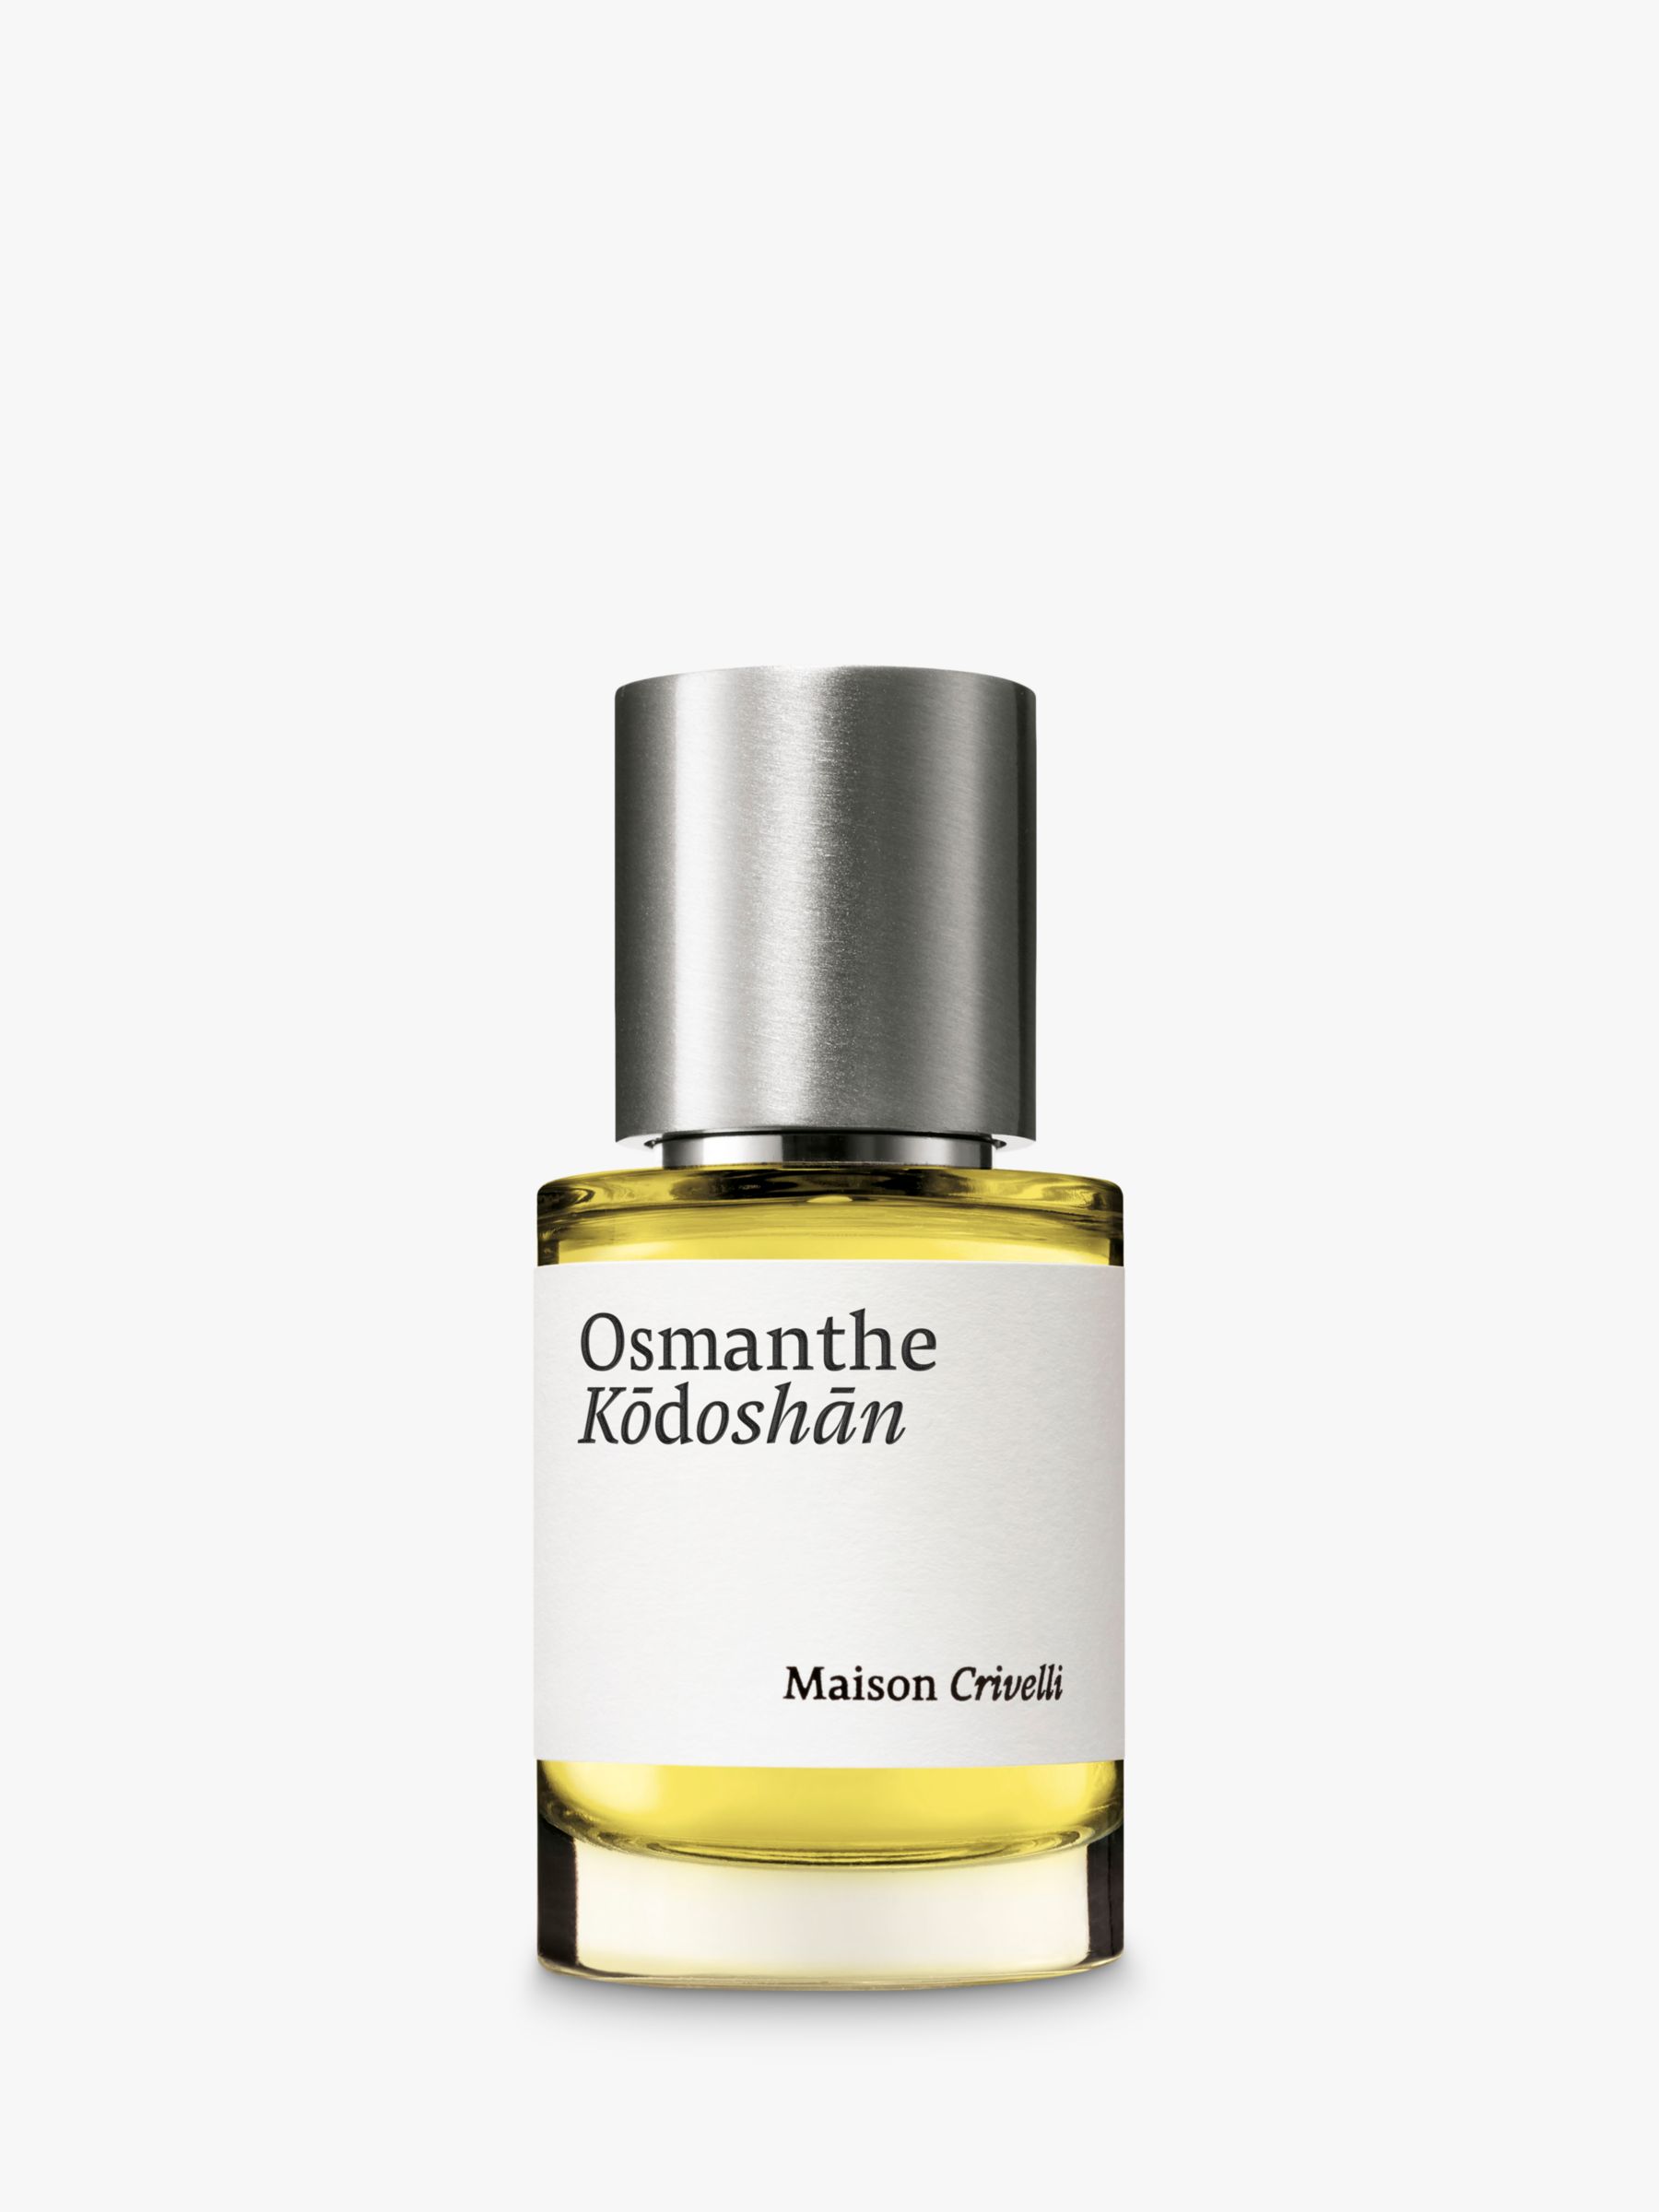 Maison Crivelli Osmanthe Kodoshan Eau de Parfum, 30ml